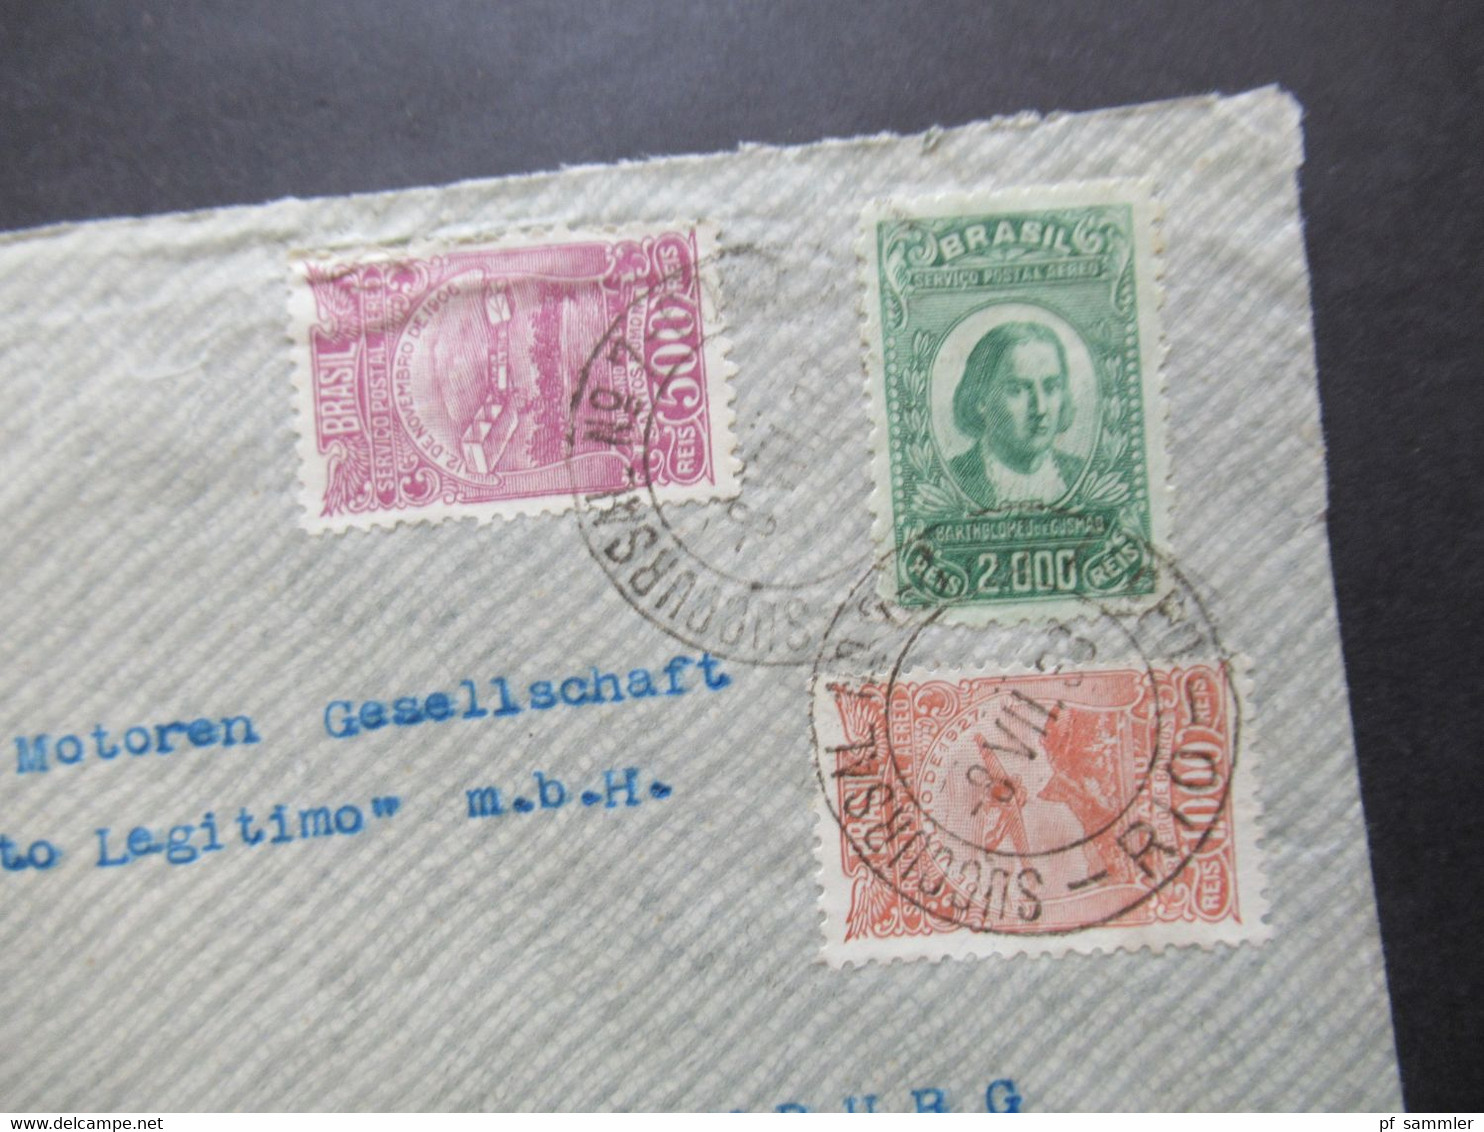 Brasilien 1933 Luftpost / Postal Aereo MiF über 4200 Reis Auslandsbrief Nach Hamburg Deutz Motoren Otto Legitimo - Covers & Documents